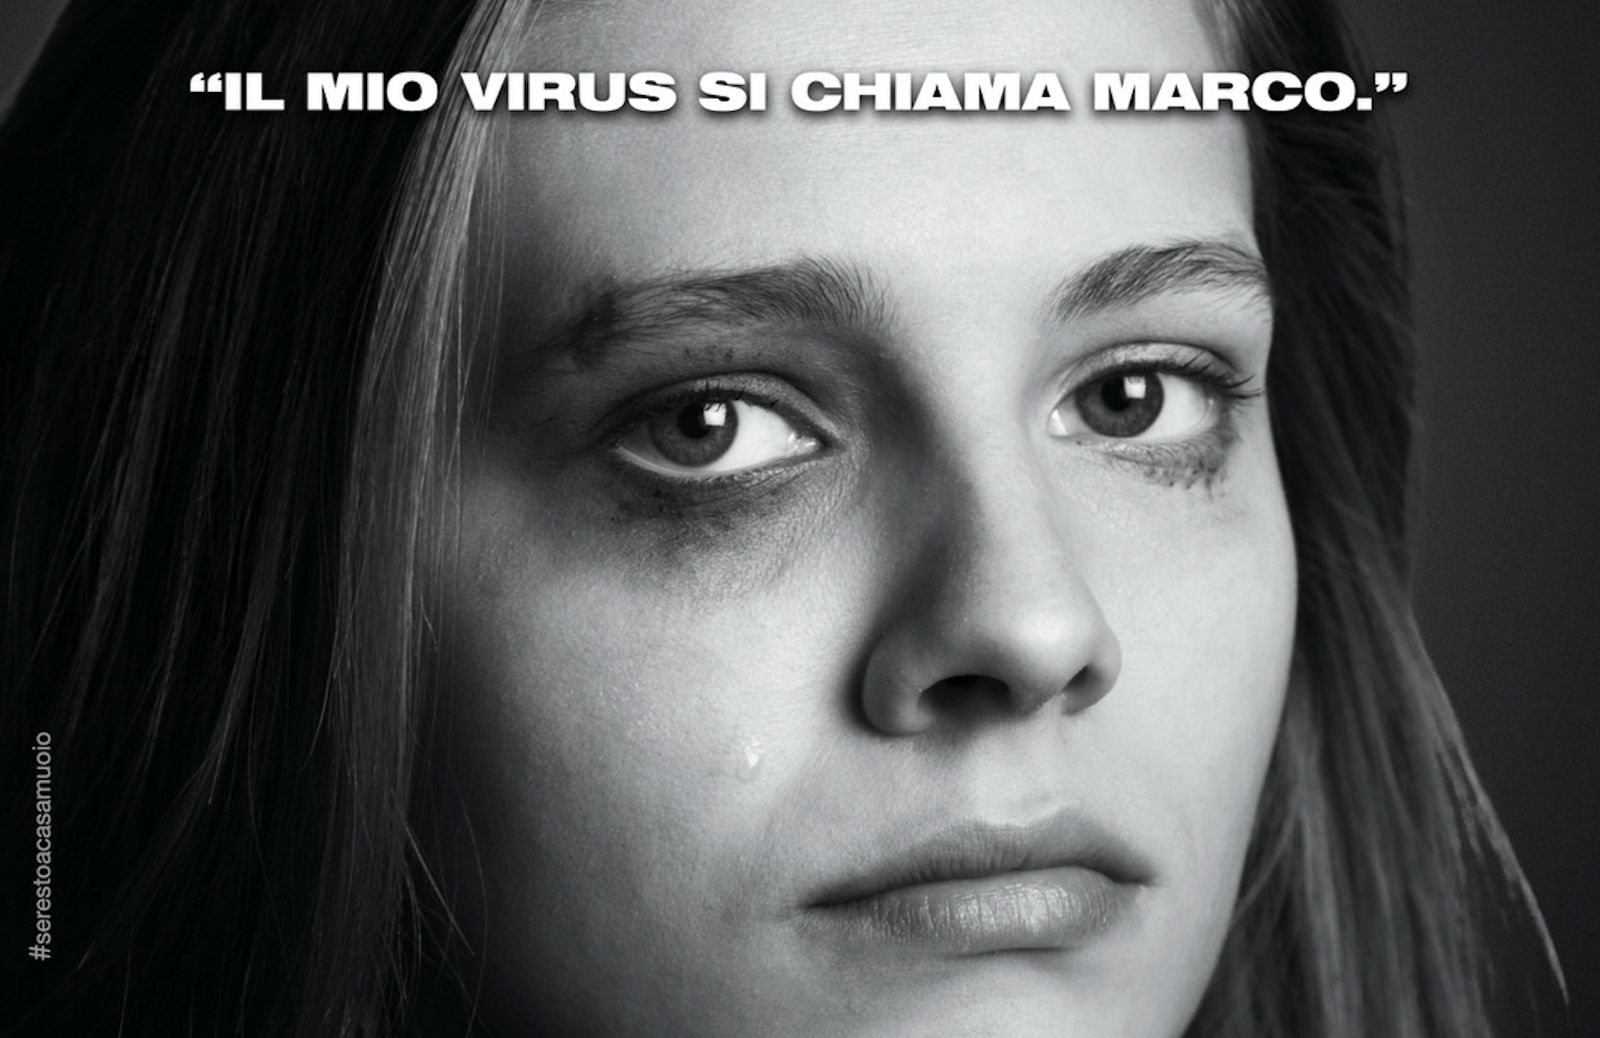 “Il mio virus si chiama Giorgio”, la campagna per supportare le vittime di violenza domestica